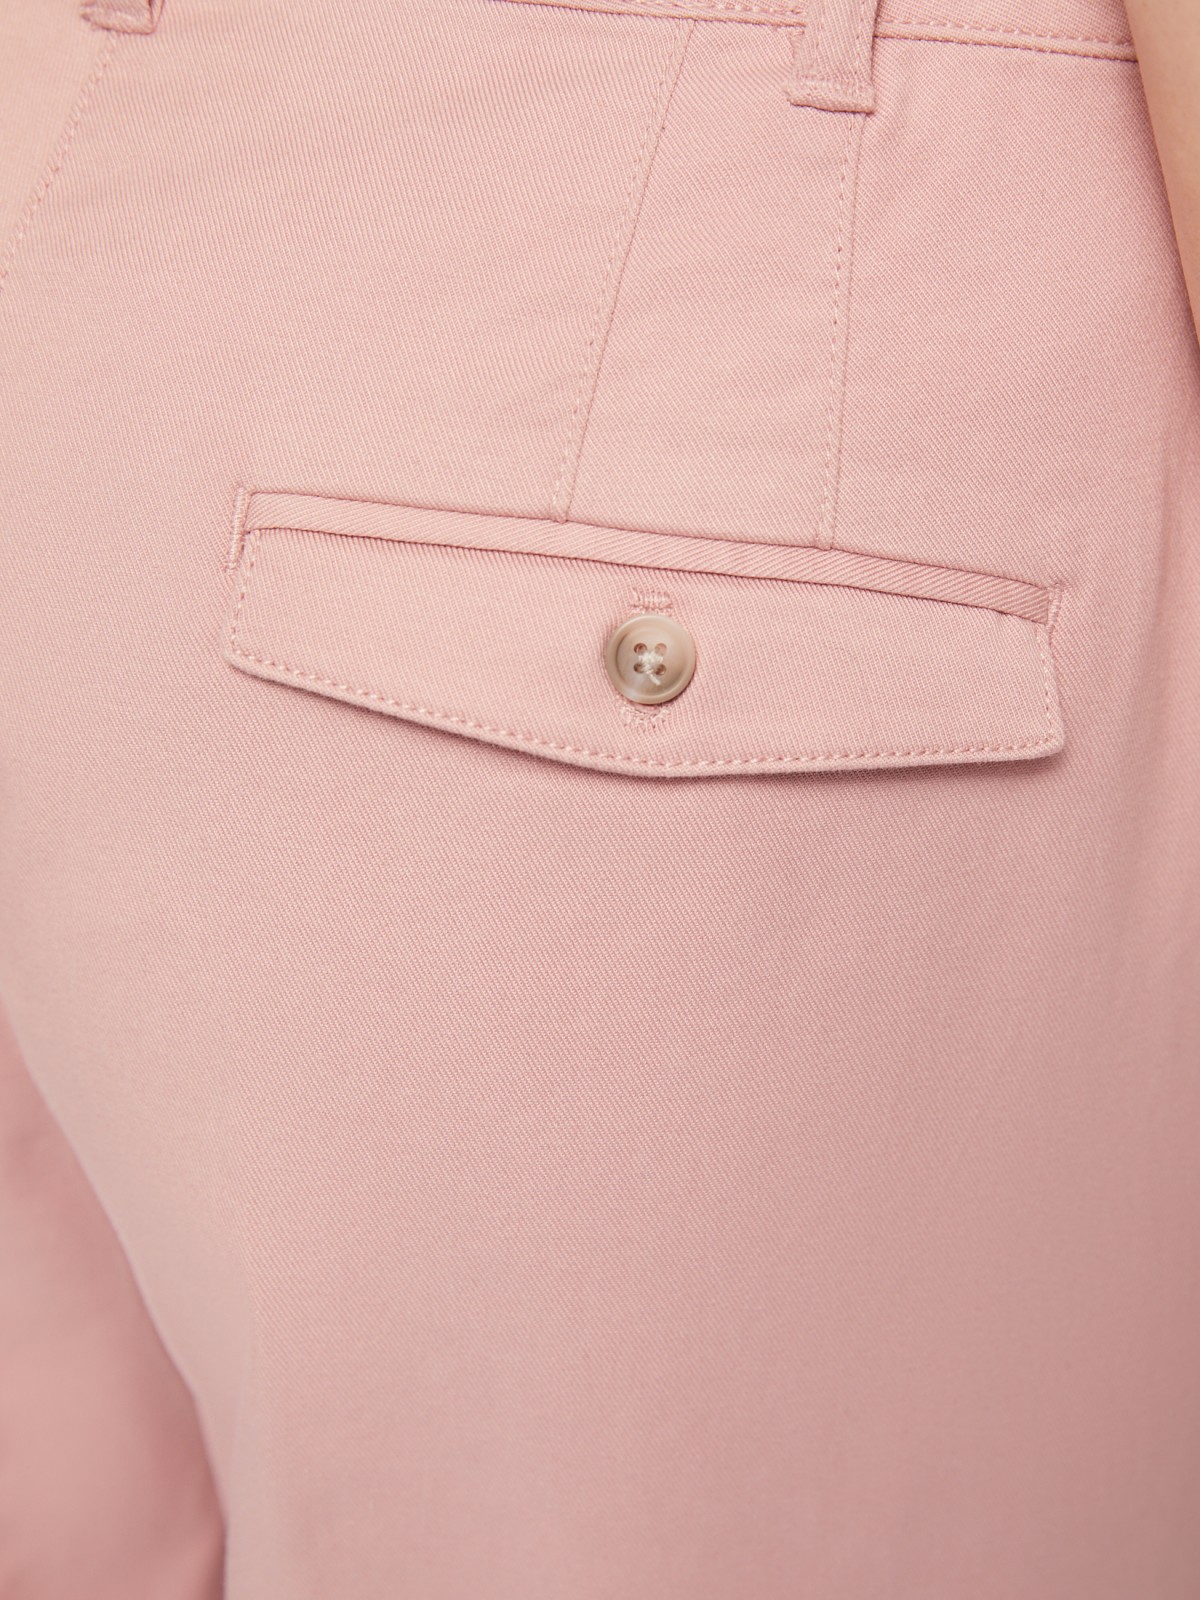 Офисные брюки-чинос со стрелками и ремнём zolla 02422736F043, цвет розовый, размер S - фото 6